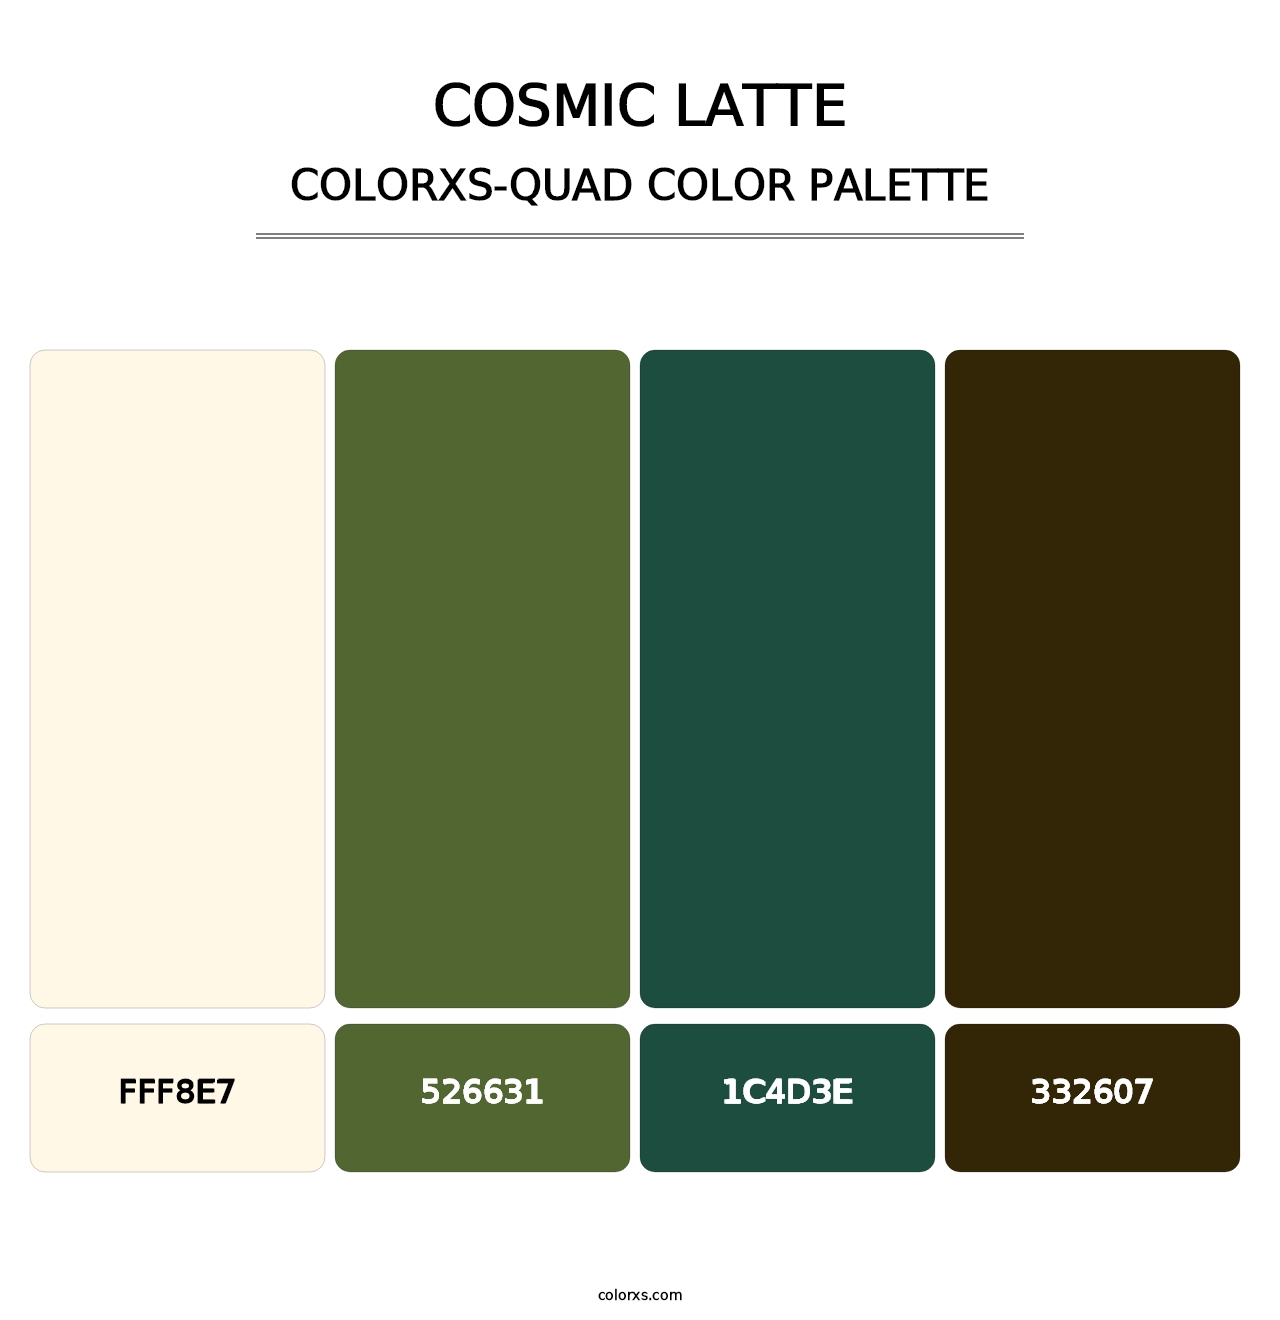 Cosmic Latte - Colorxs Quad Palette